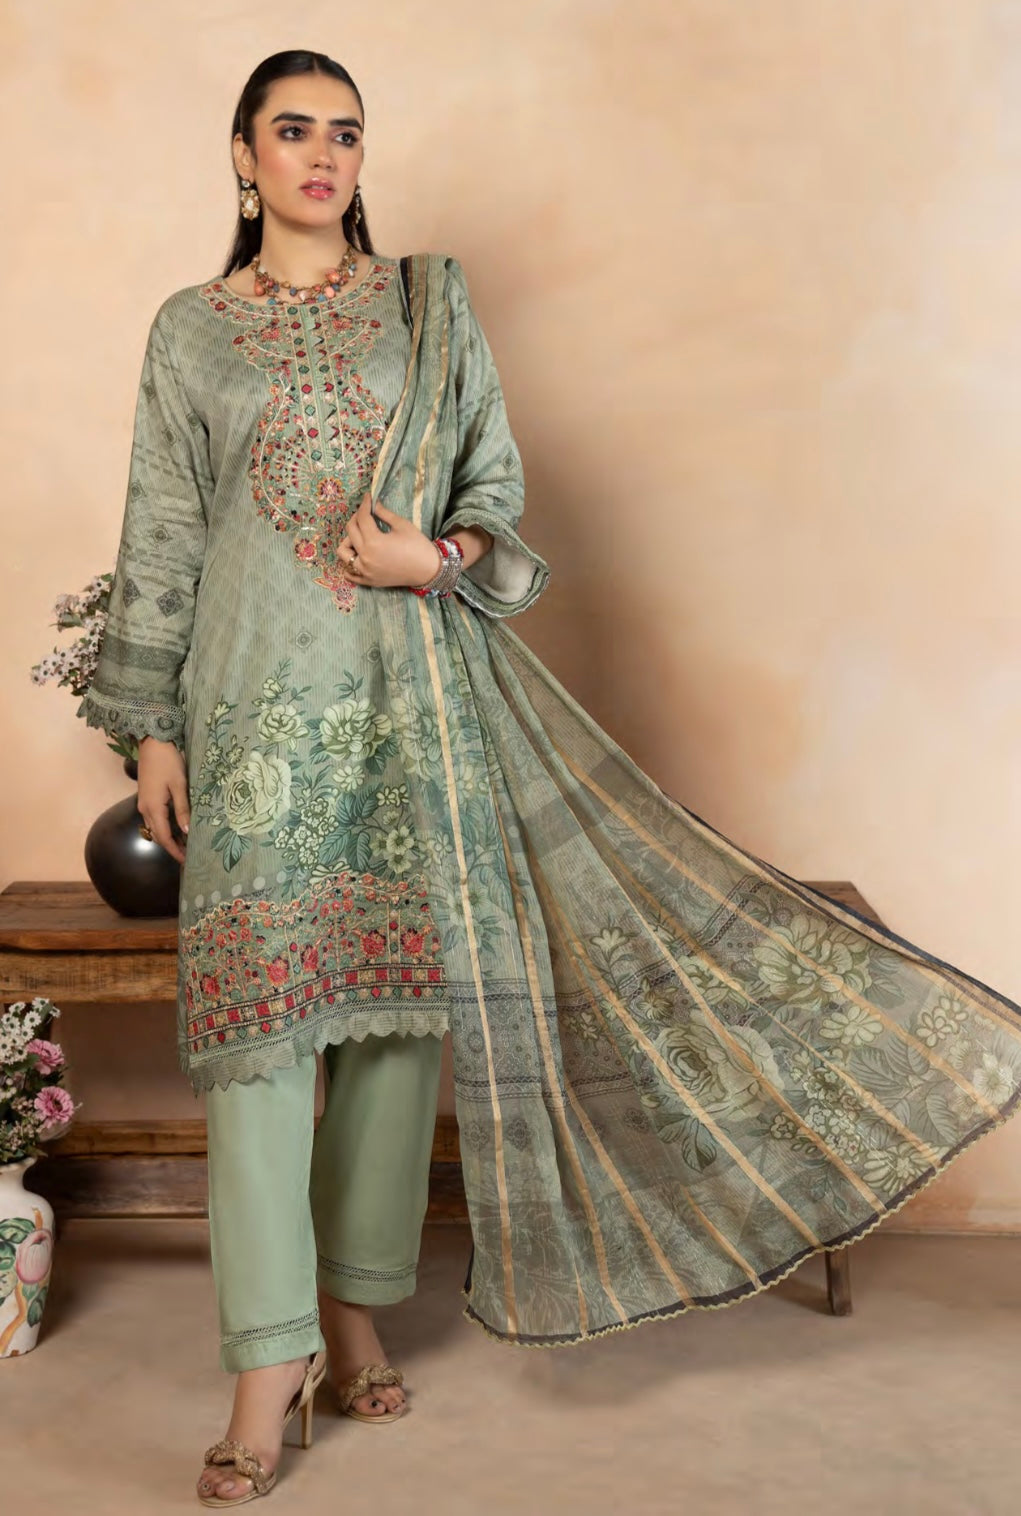  Munira - Pakistani clothes